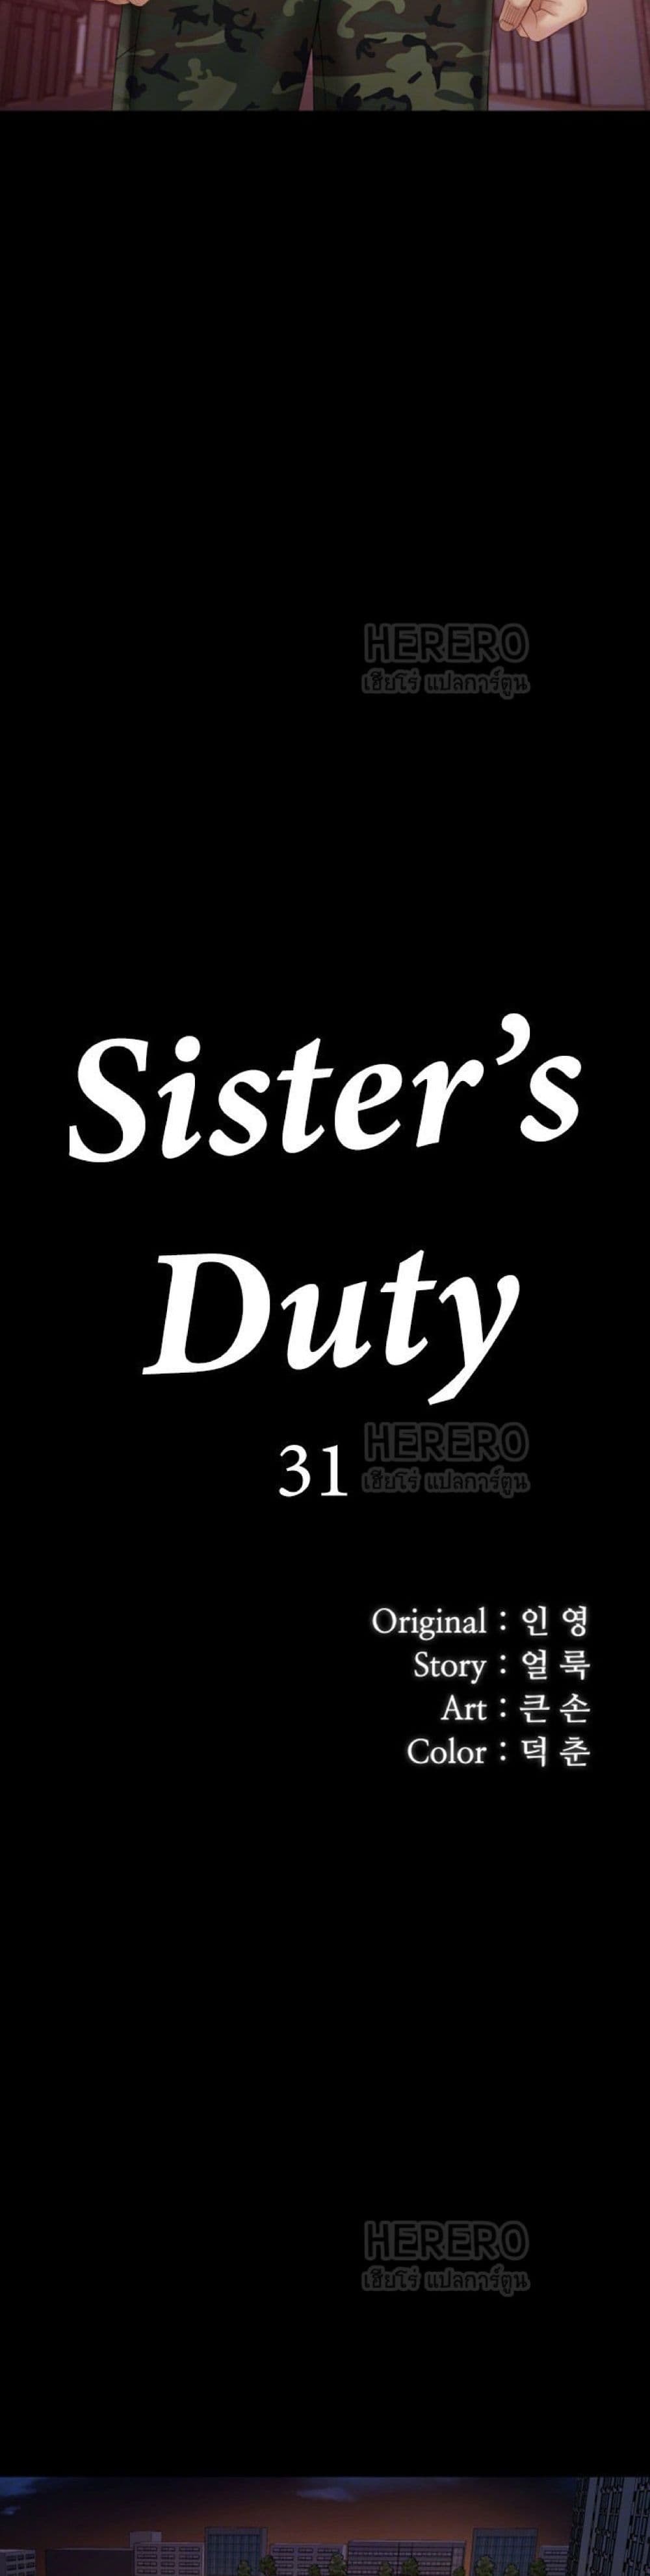 Sister's Duty 31 (4)